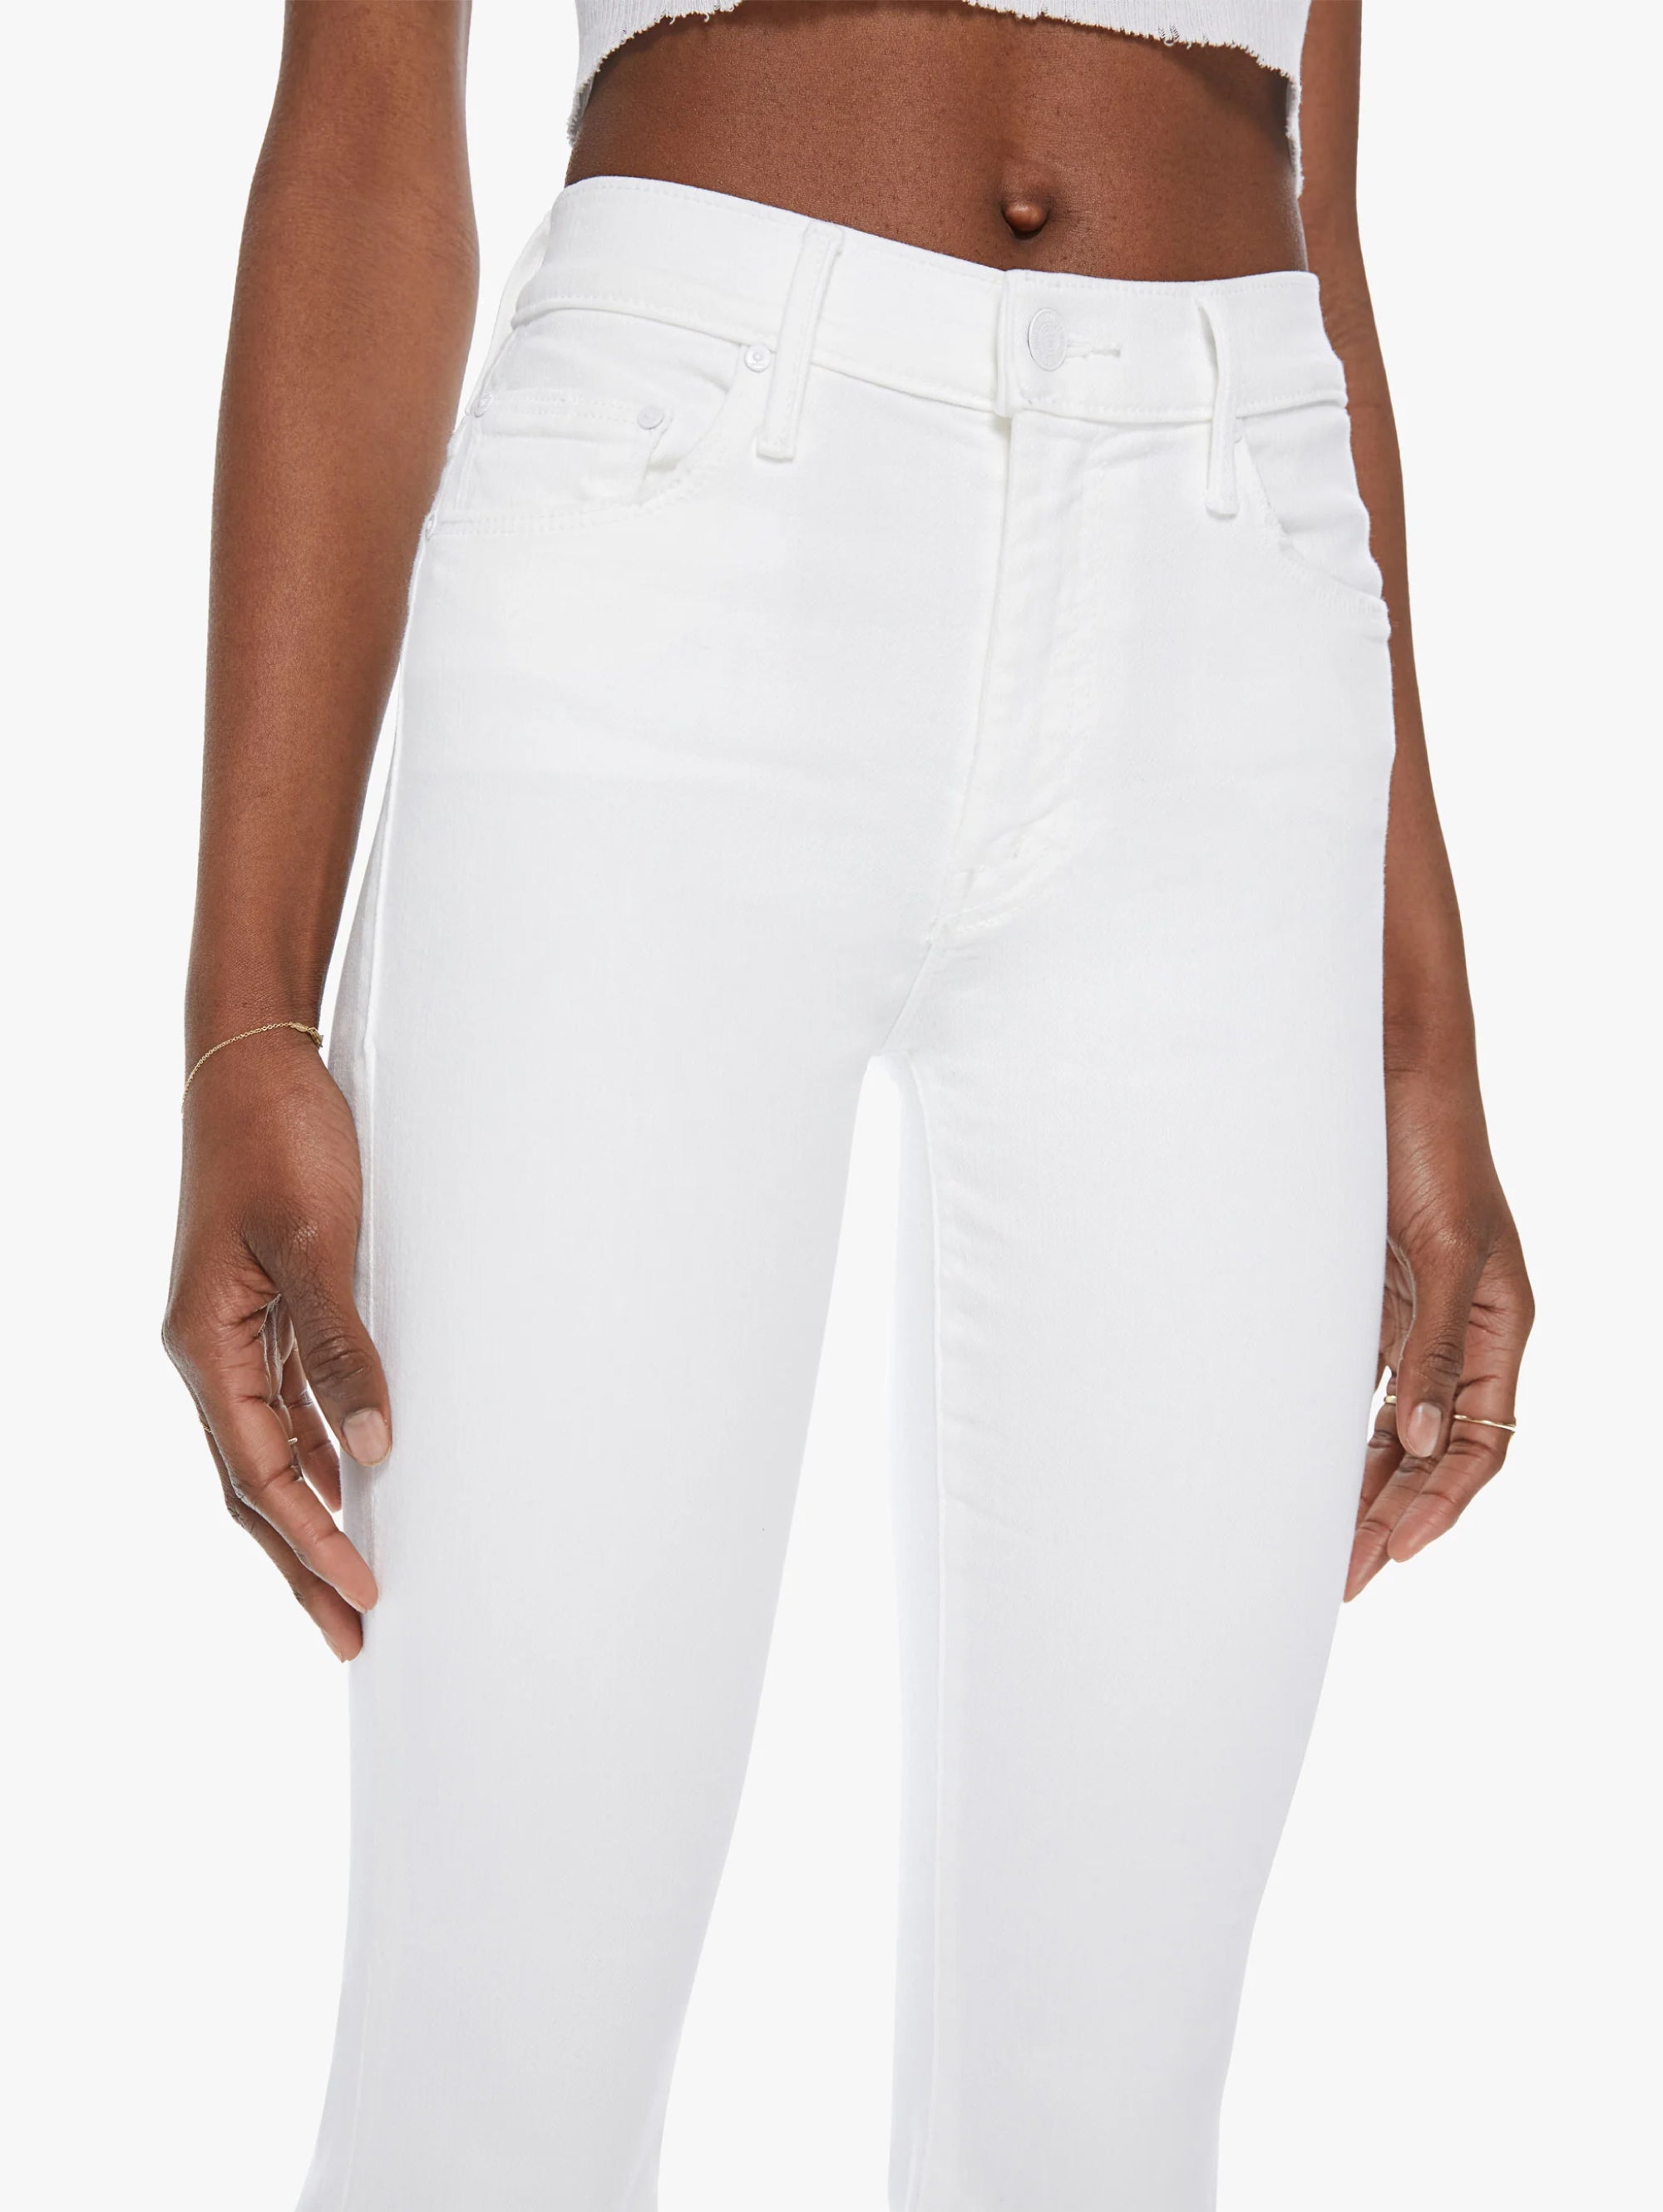 Jeans-Schlag mit weißem Fransensaum